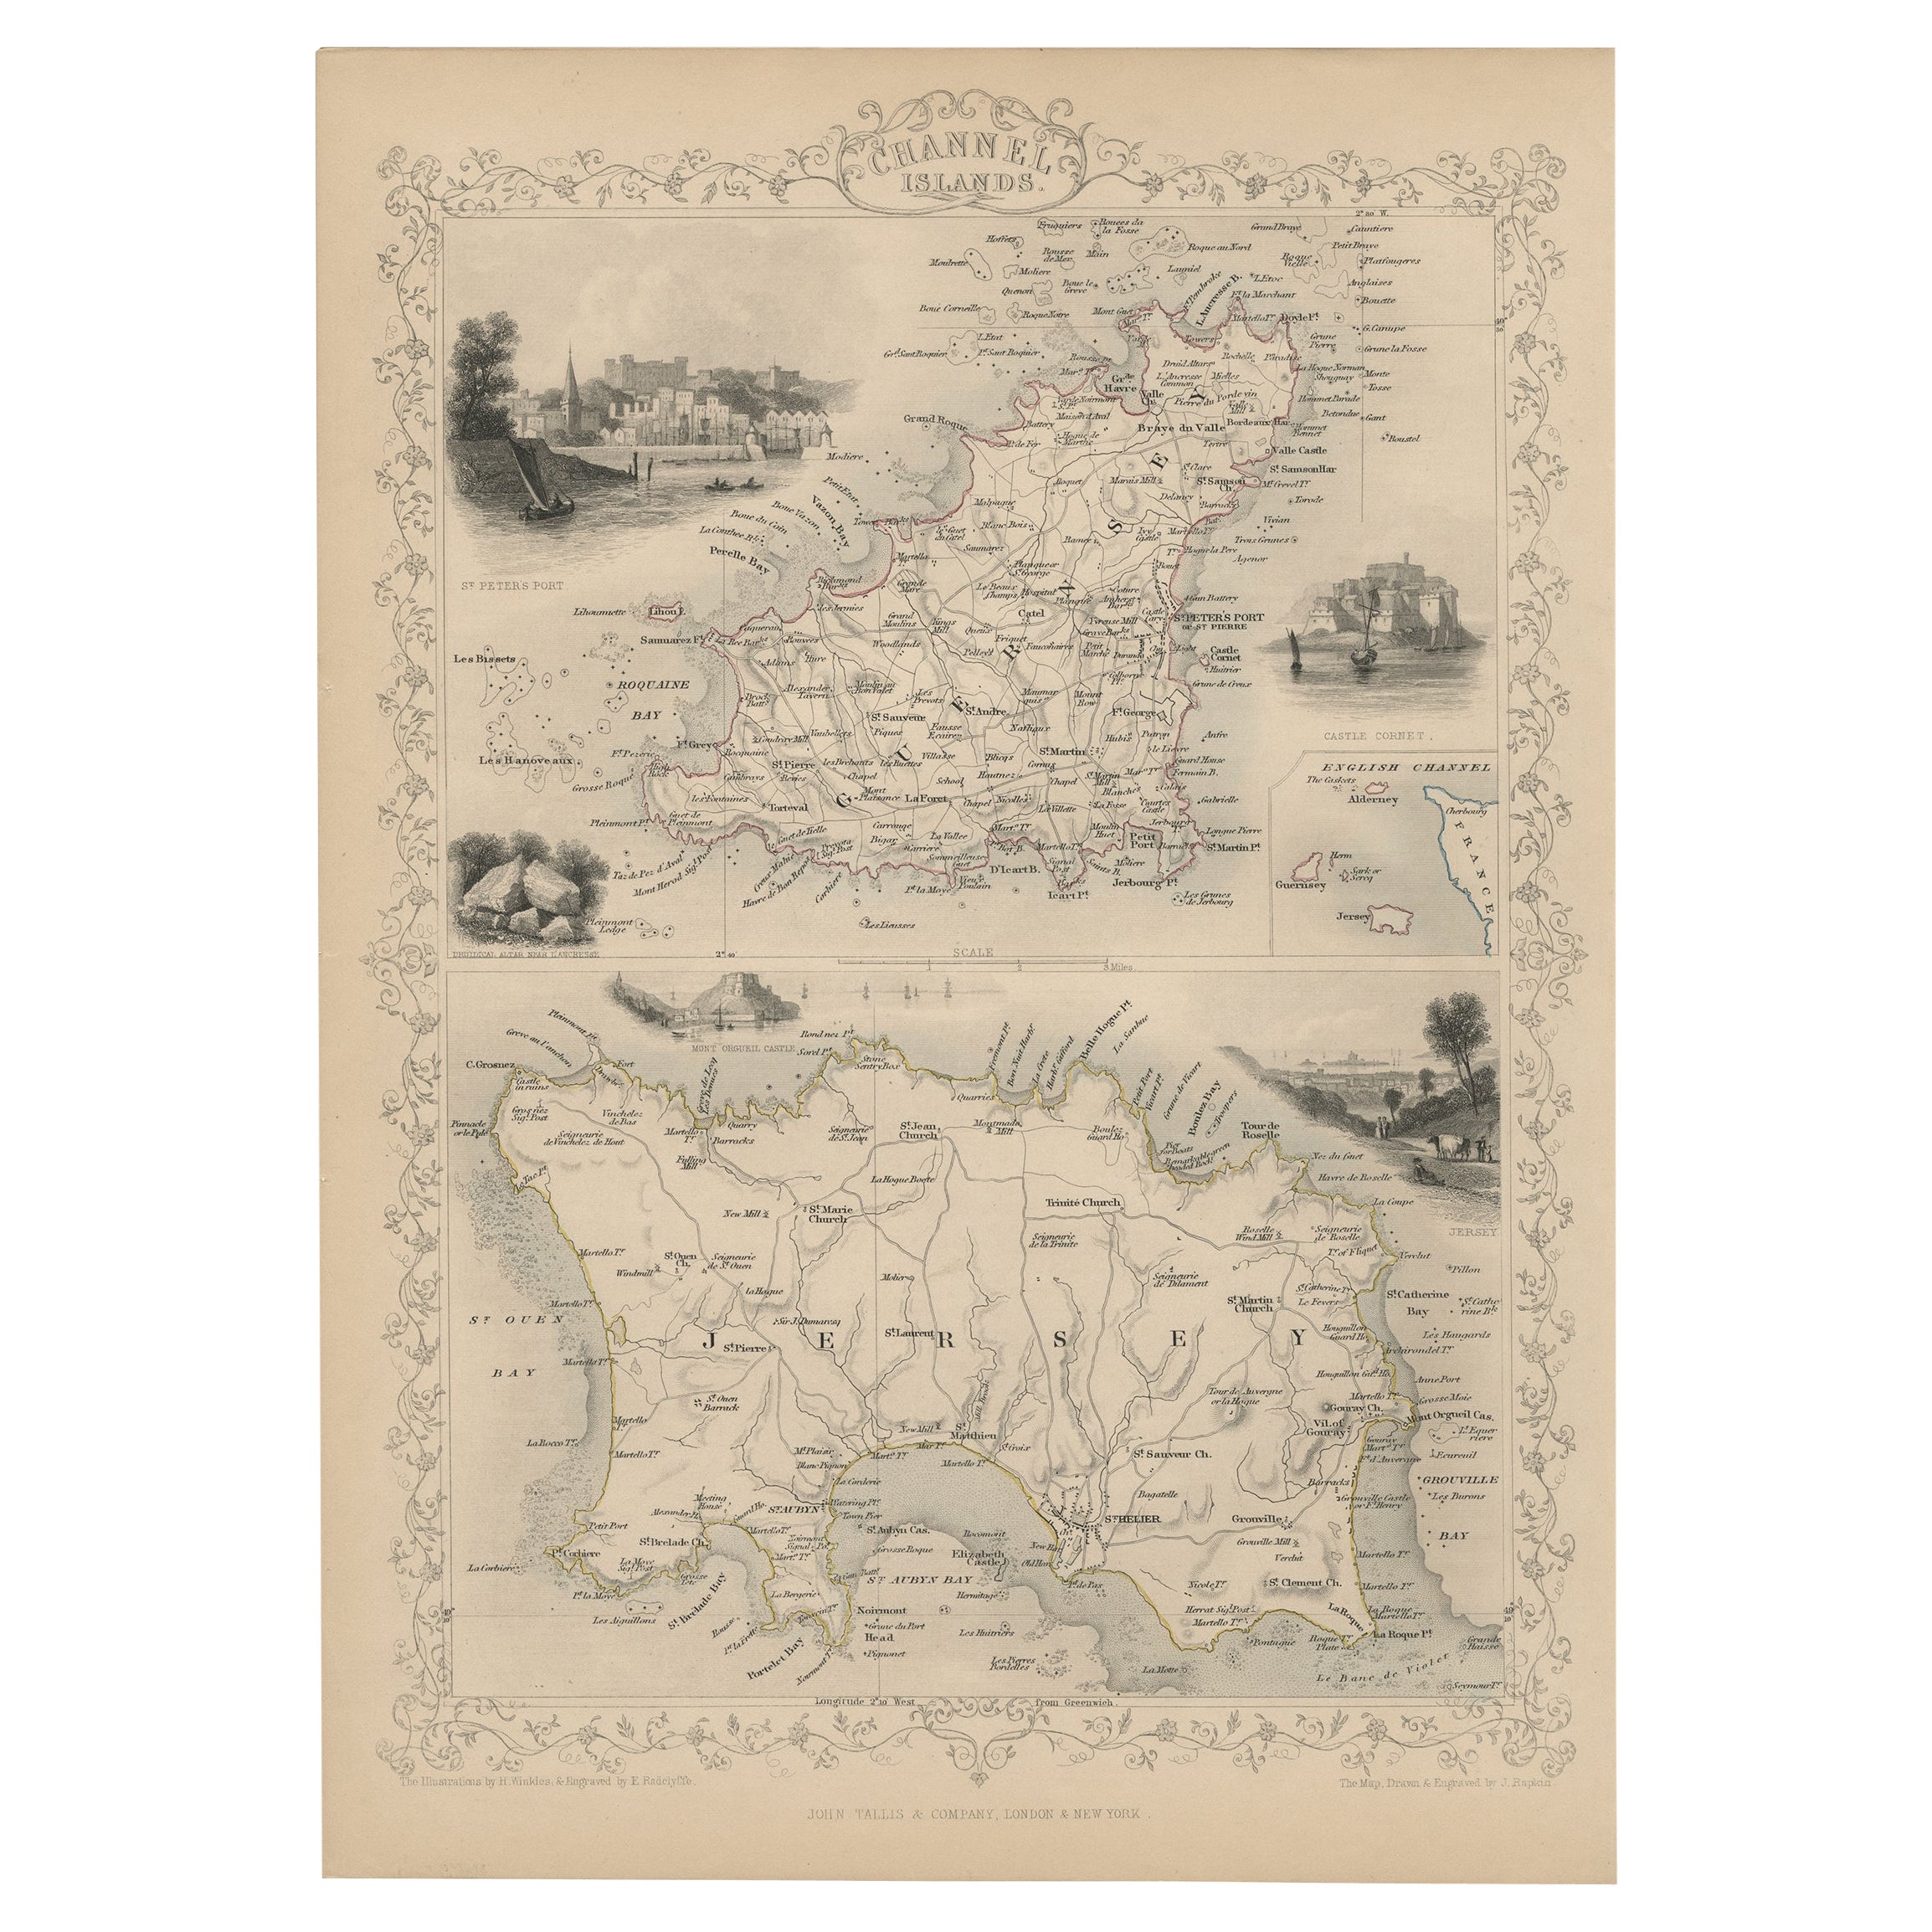 Carte ancienne originale des îles du Channel Islands, incluant des Vignettes décoratives, 1851